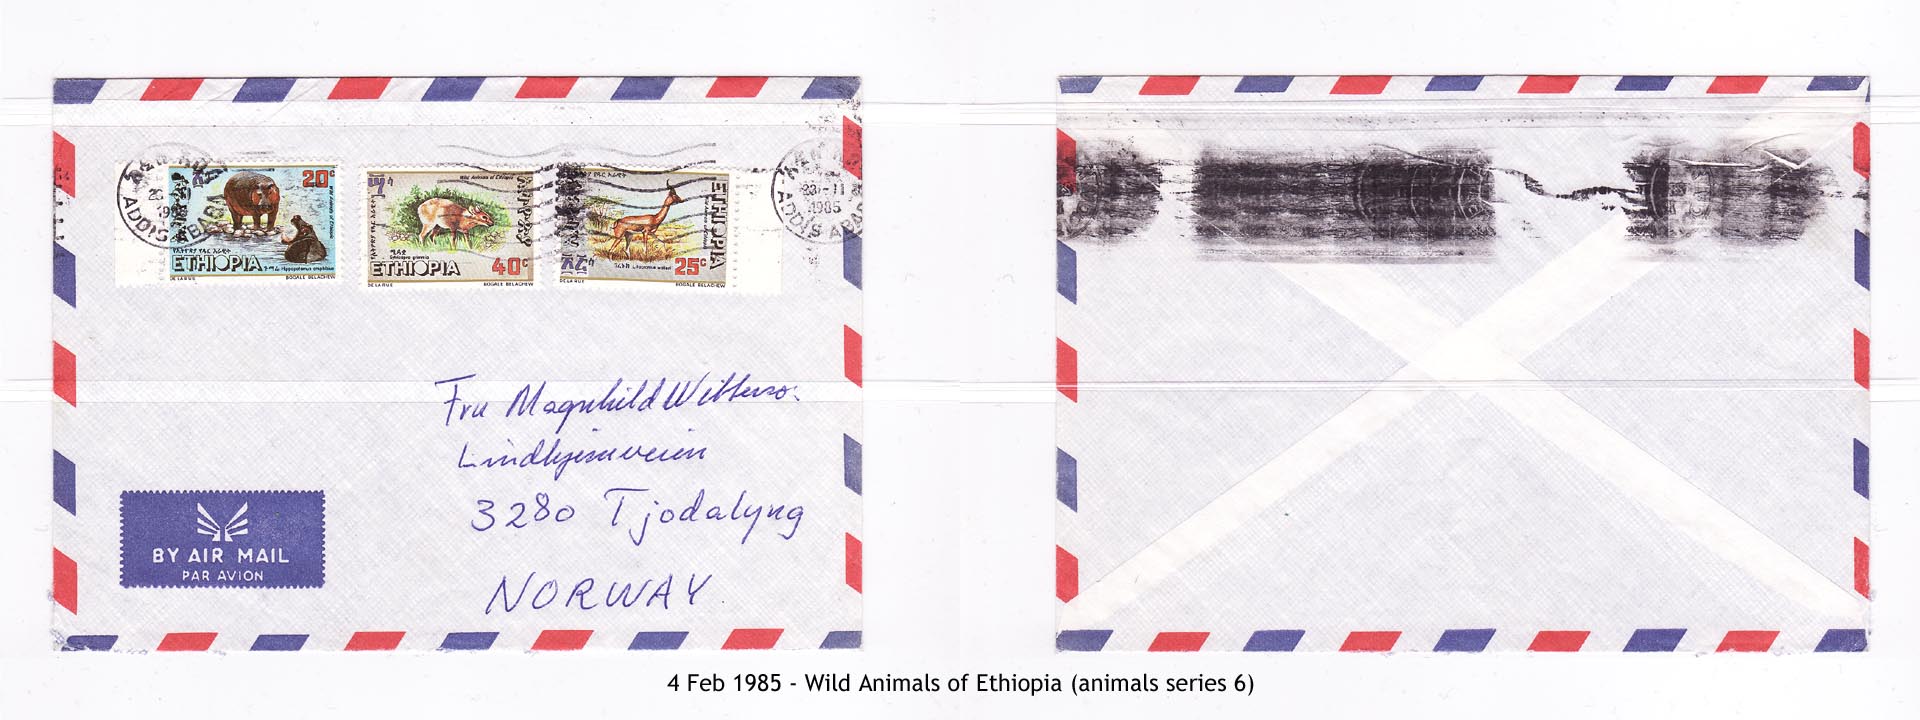 19850204 - Wild Animals of Ethiopia (animals series 6)